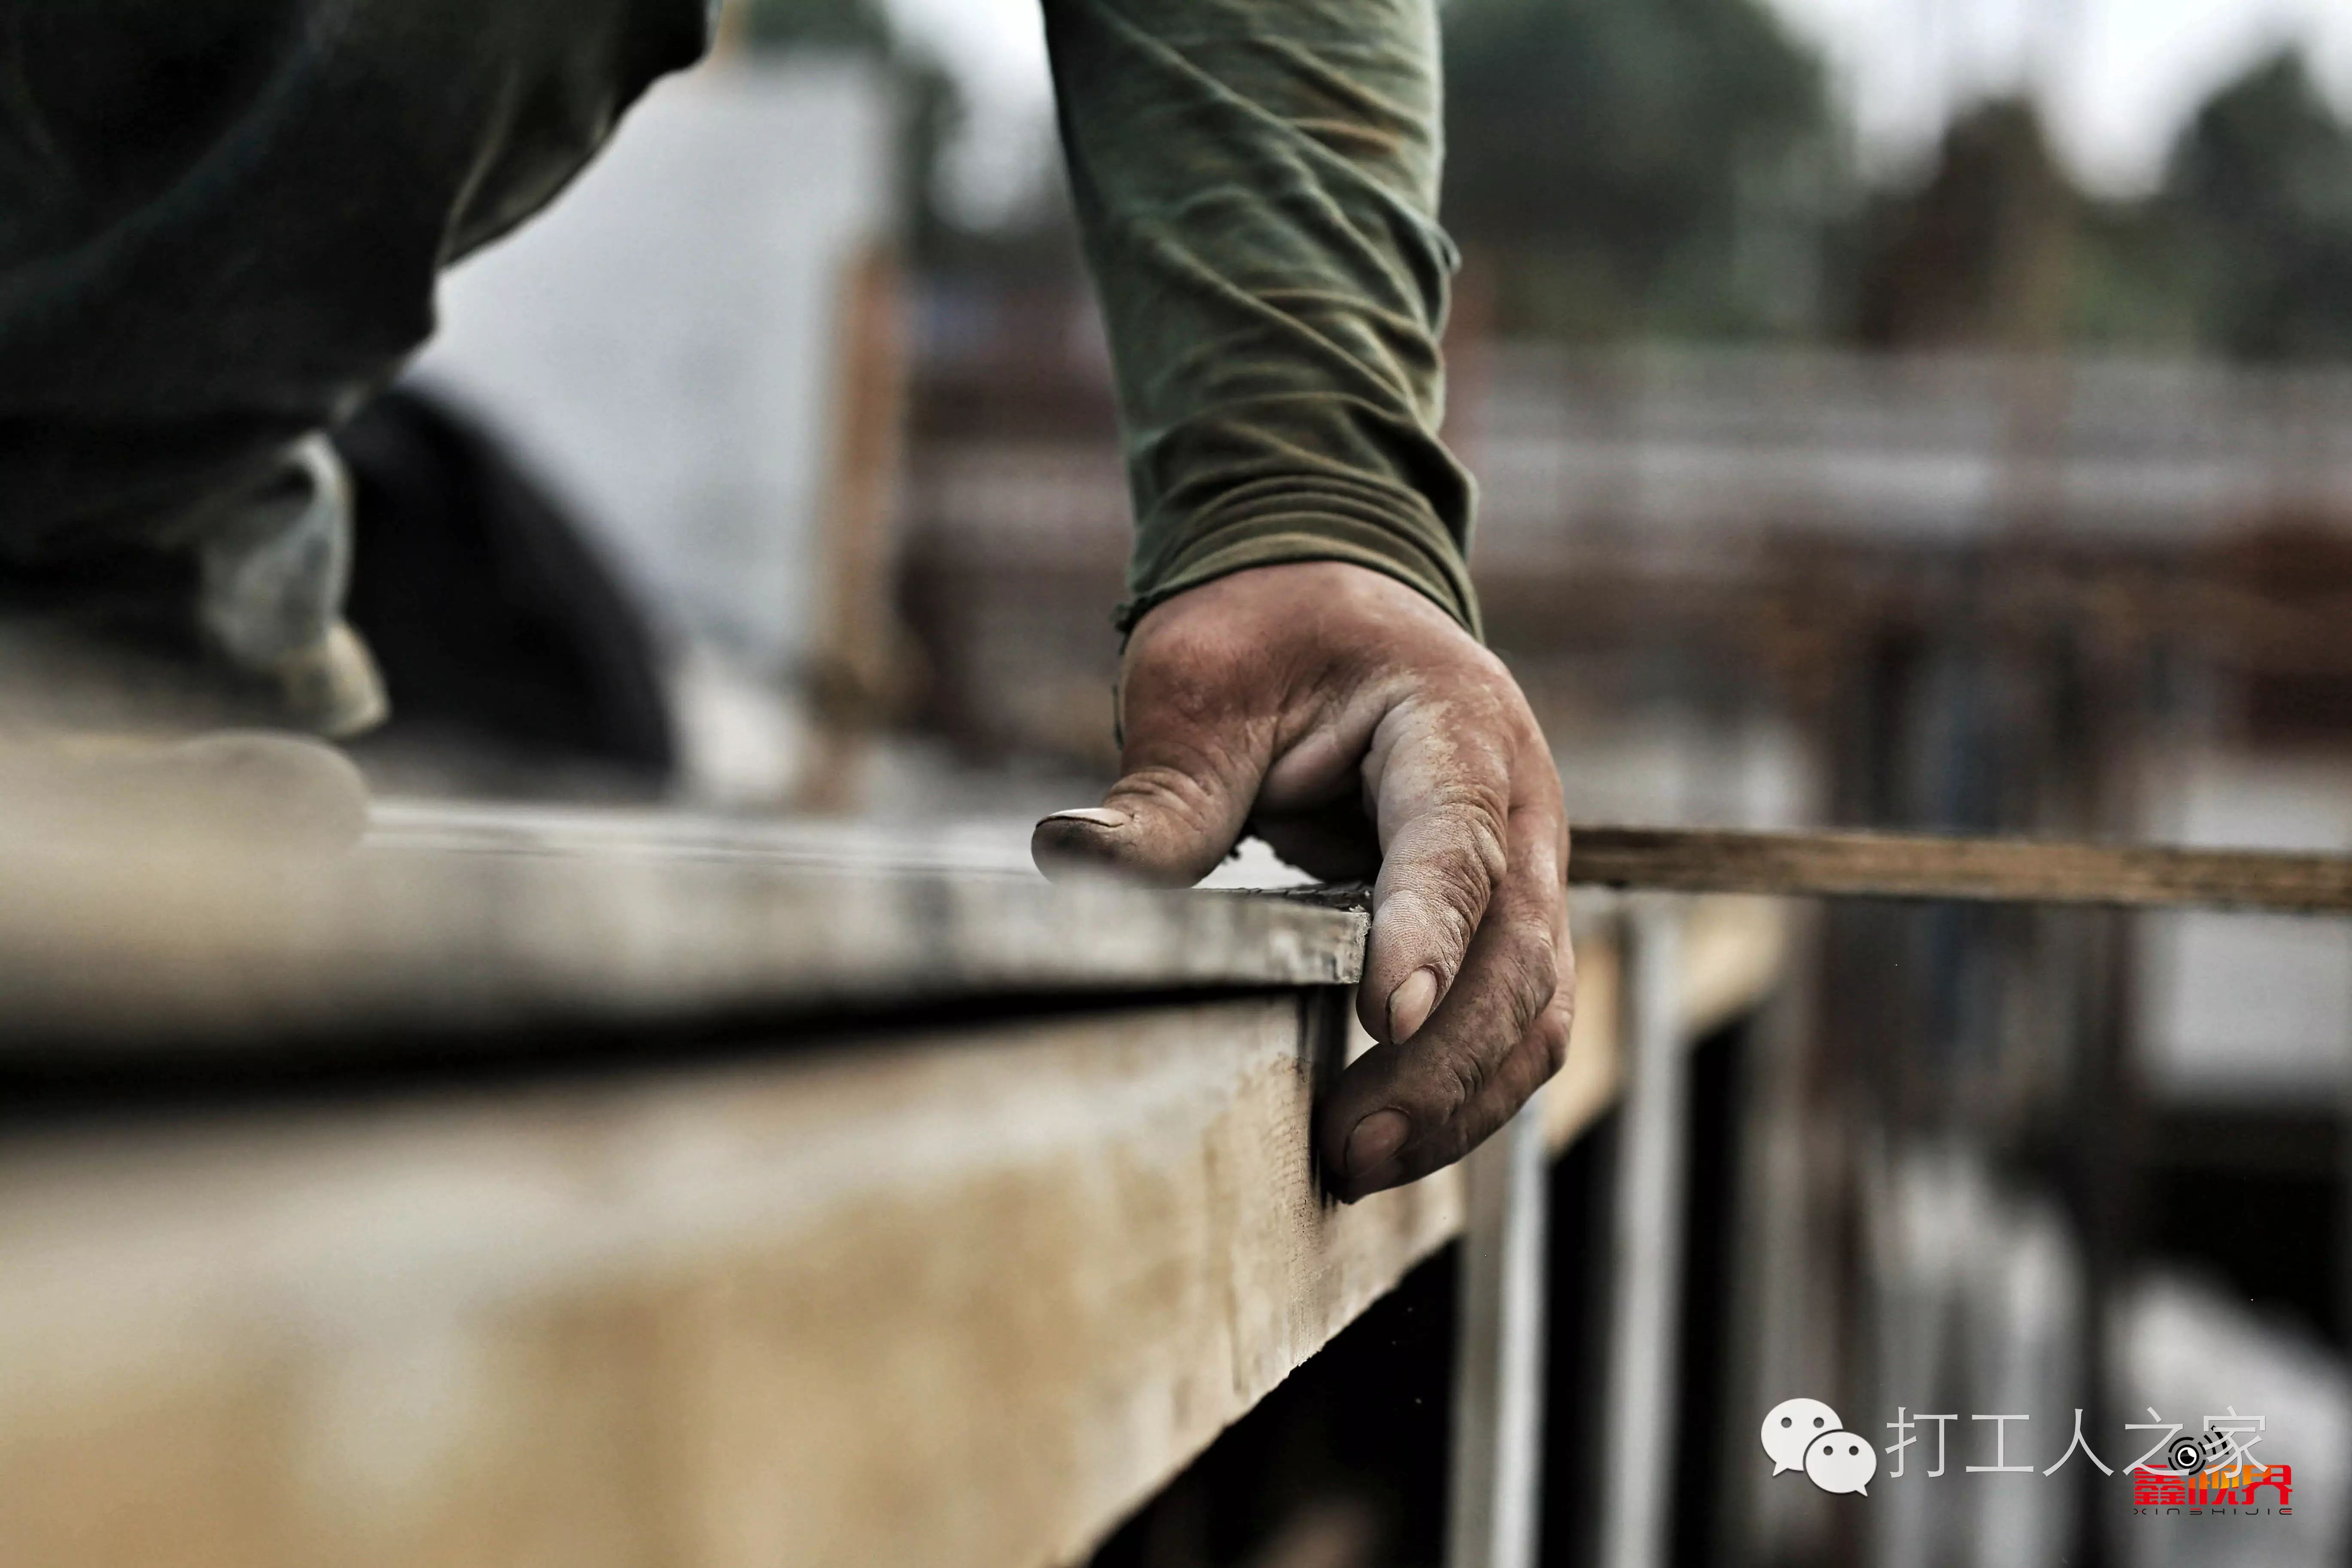 农民工每天在木模板上钉的钢钉近2000馀个,手掌经常被木刺和钢钉扎破.